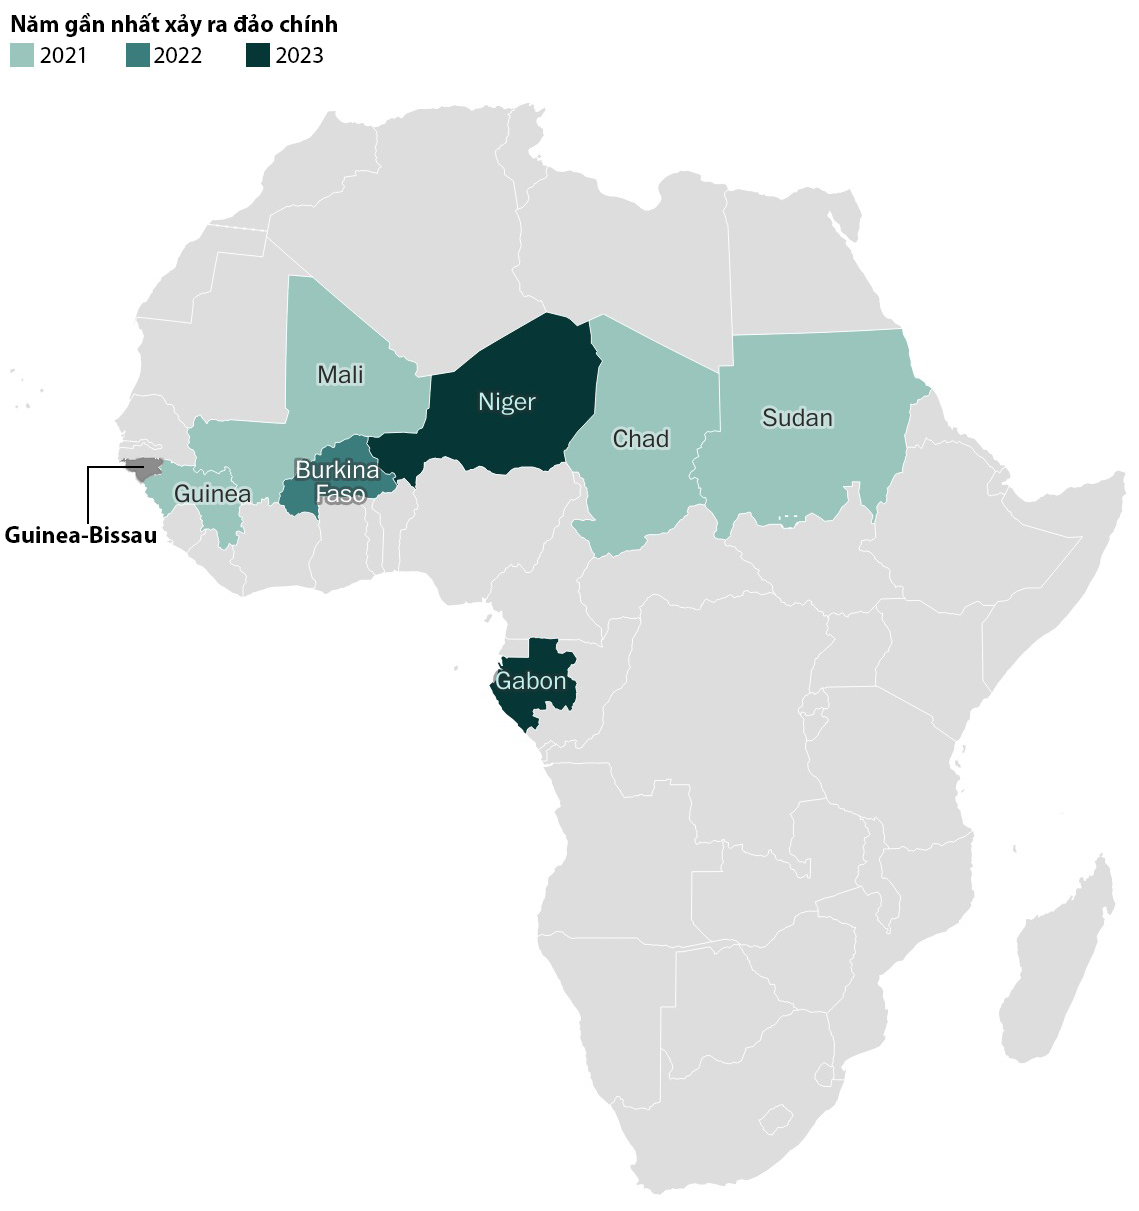 Vị trí Guinea-Bissau và các quốc gia châu Phi xảy ra đảo chính gần đây. Đồ họa: WP